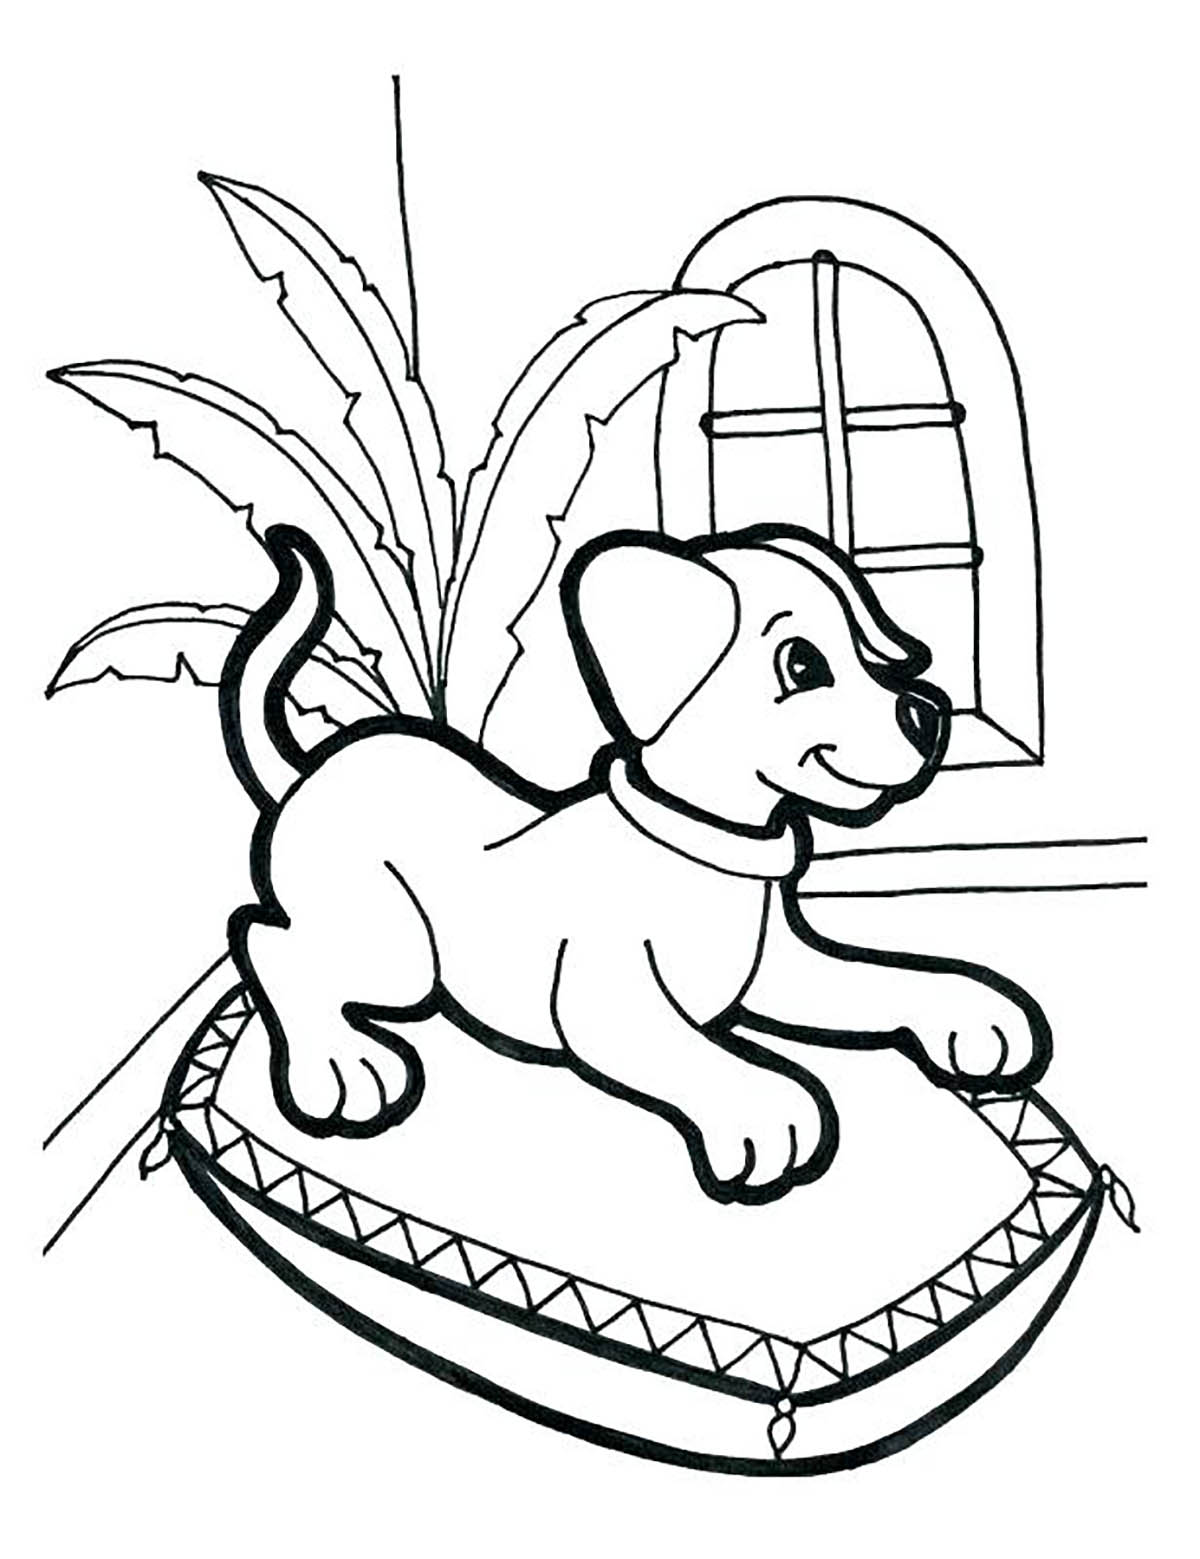 Coloreado de un perro en su cesta.